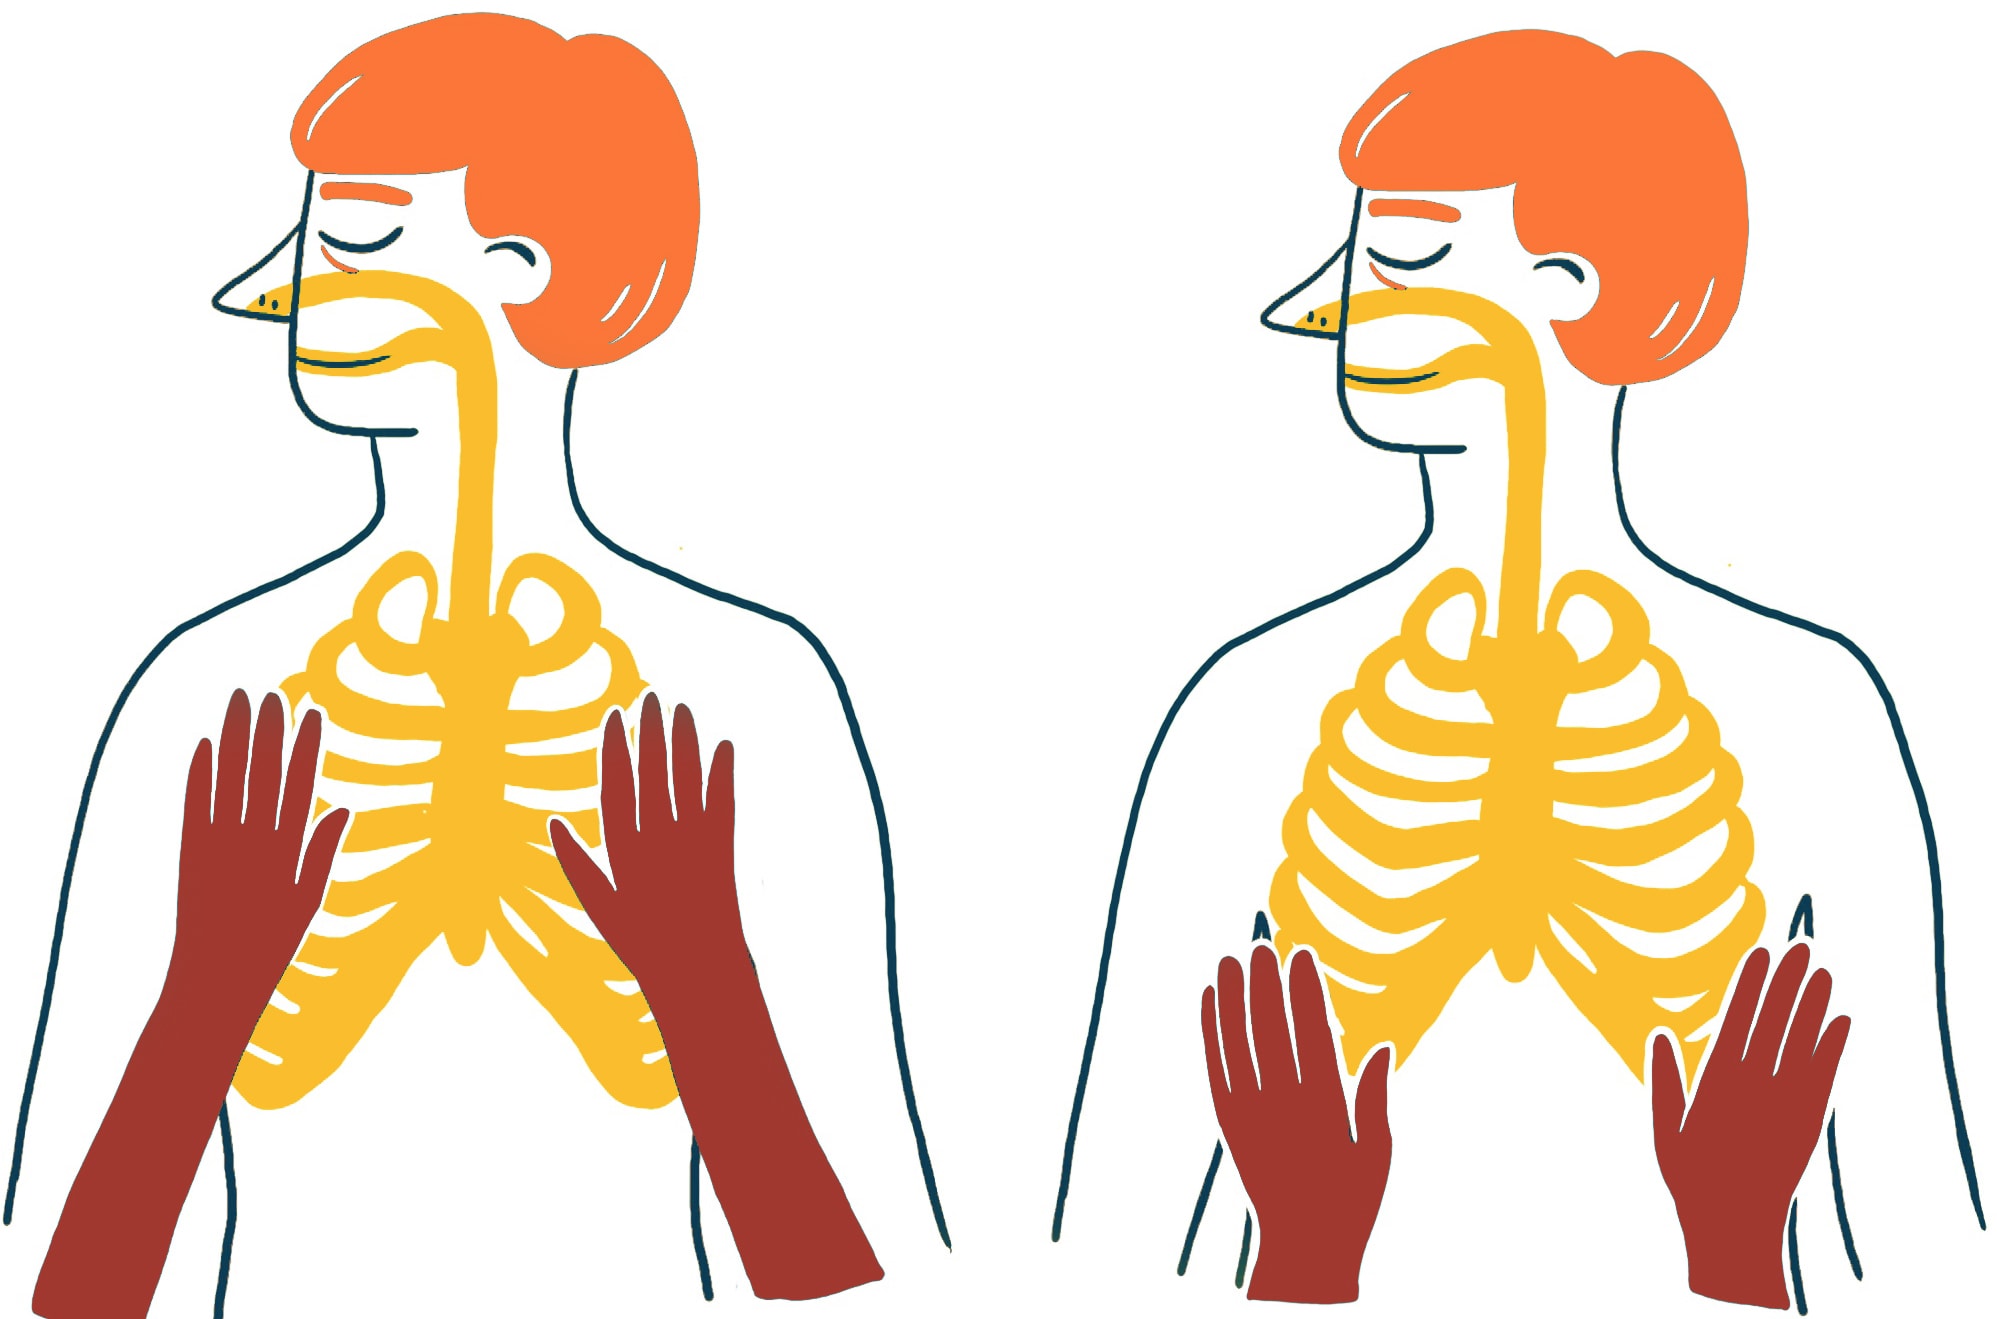 Kontaktatmung: Abbildung von zwei nebeneinander stehenden menschlichen Figuren. Beide Figuren haben sichtbare Skelettstrukturen. Im linken Bild liegen zwei Hände auf den Rippen und der oberen Brust. Im rechten Bild liegen die Hände tiefer, näher am Bauchbereich.